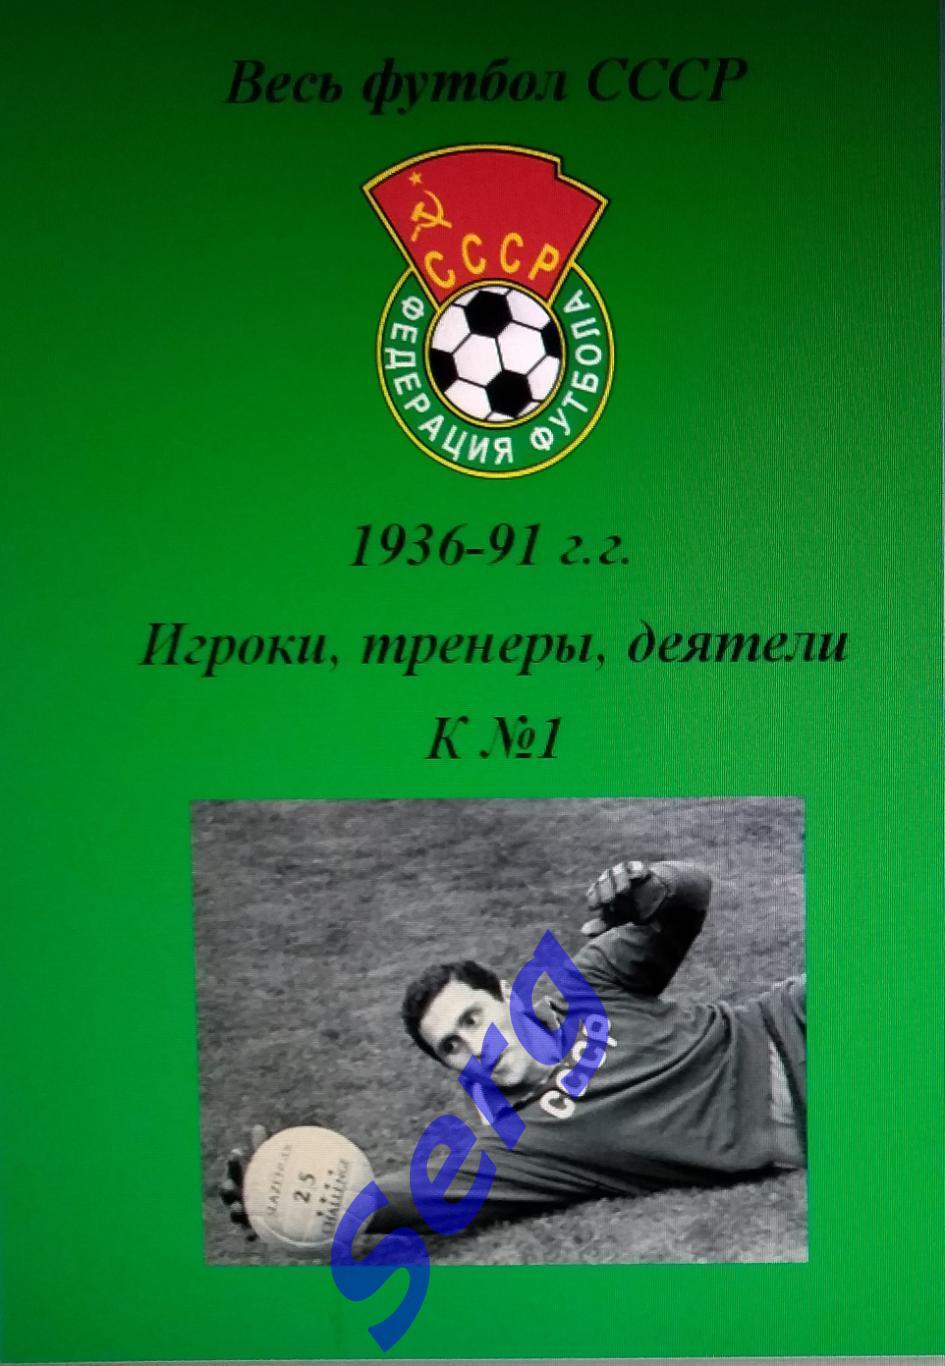 Весь футбол СССР. 1936-1991 г.г. Игроки, тренеры, деятели на букву К №1